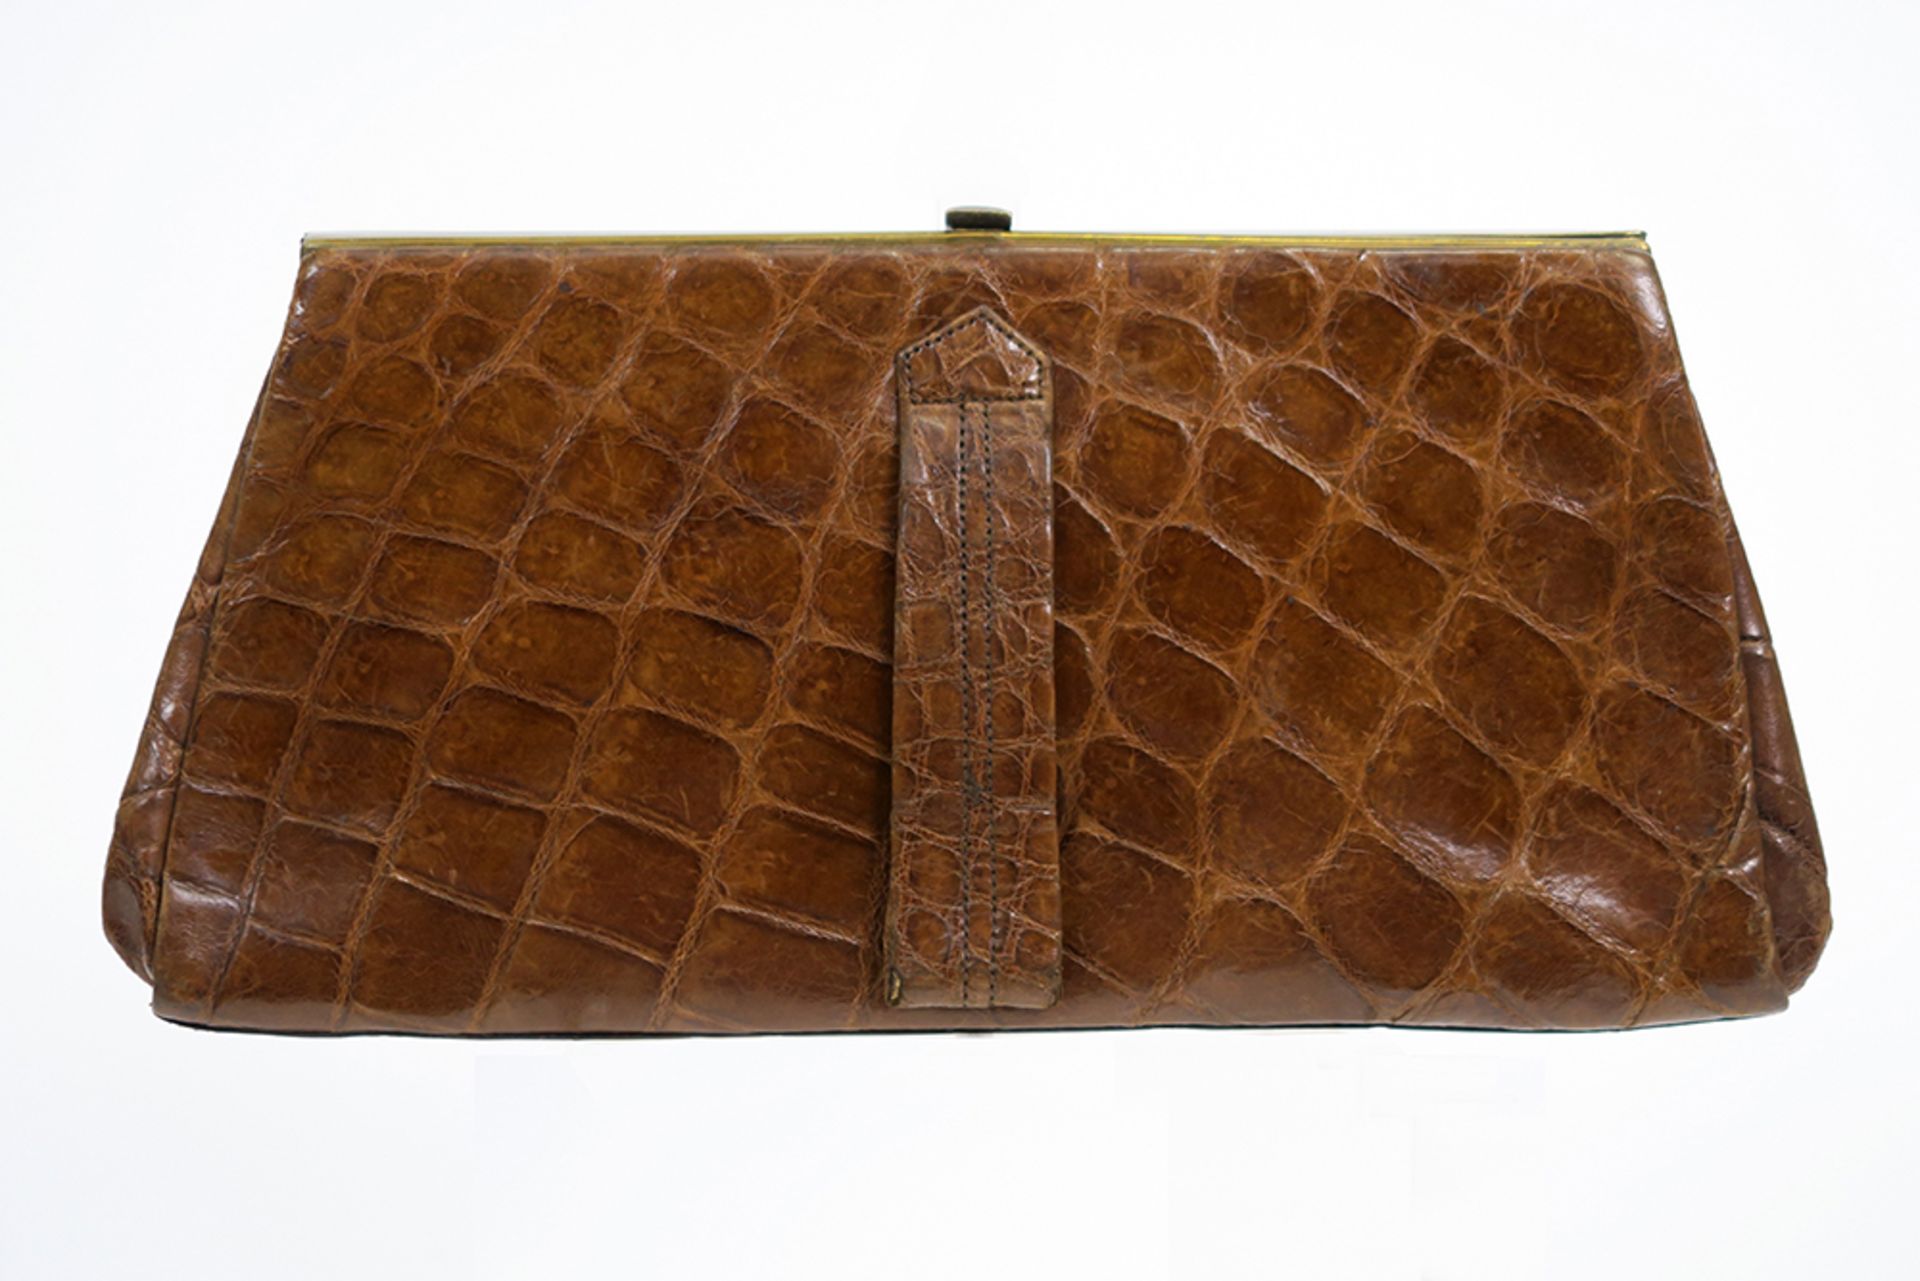 thirties' vintage crocodile leather handbag || Vintage handtas van ca 1930 in krokodillenleder - Image 2 of 2